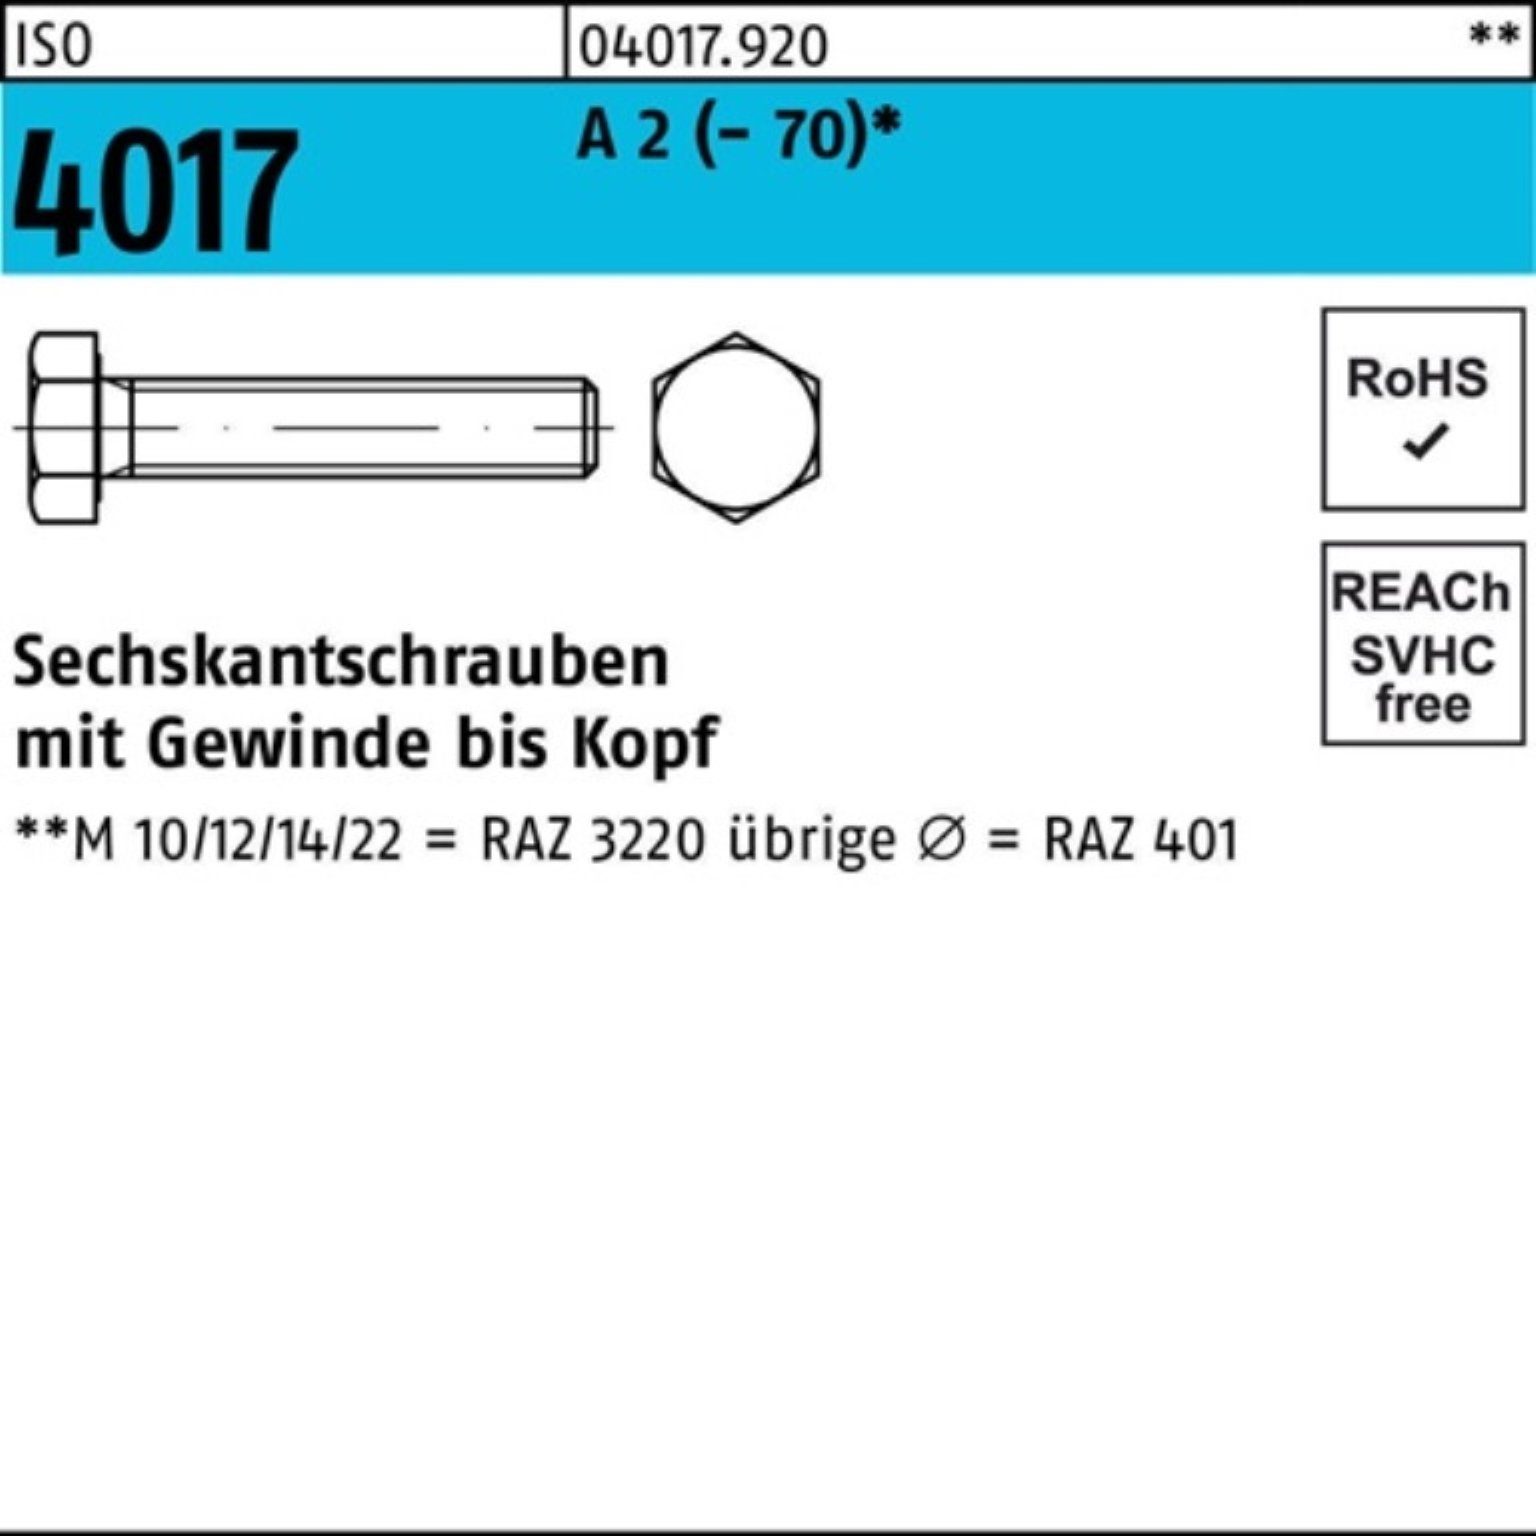 Bufab Sechskantschraube 100er Pack Sechskantschraube ISO 4017 VG M20x 55 A 2 (70) 25 Stück